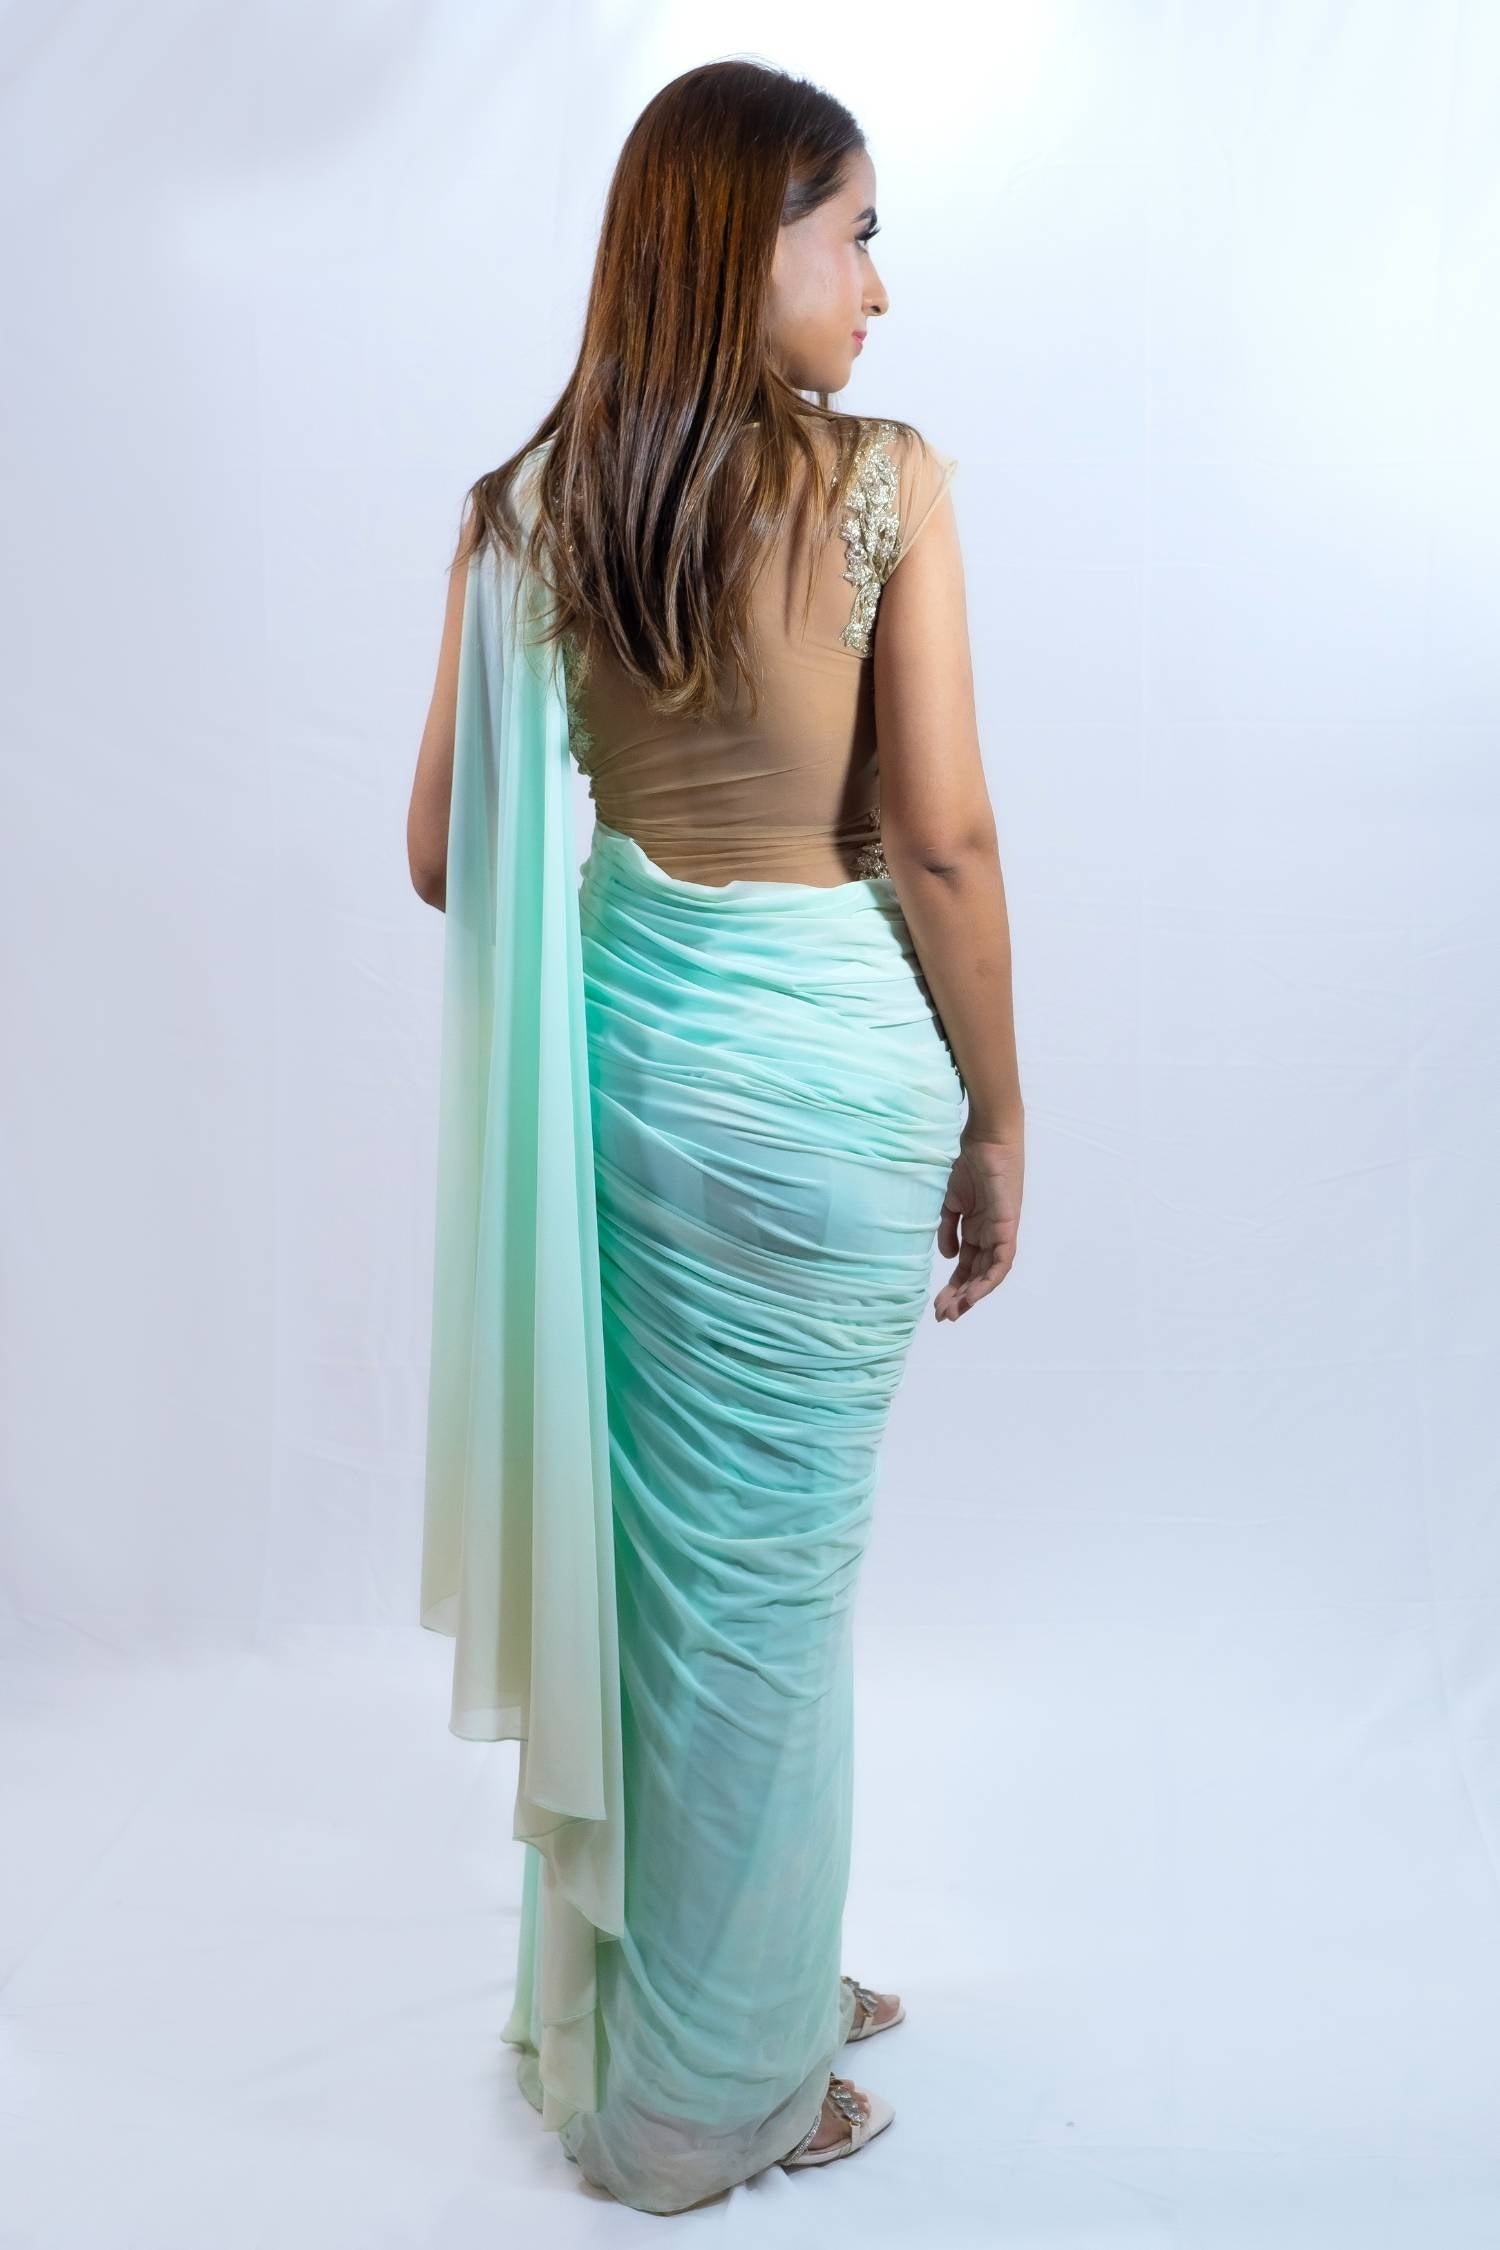 Mint green fusion saree gown Indian outfit rent Bangkok